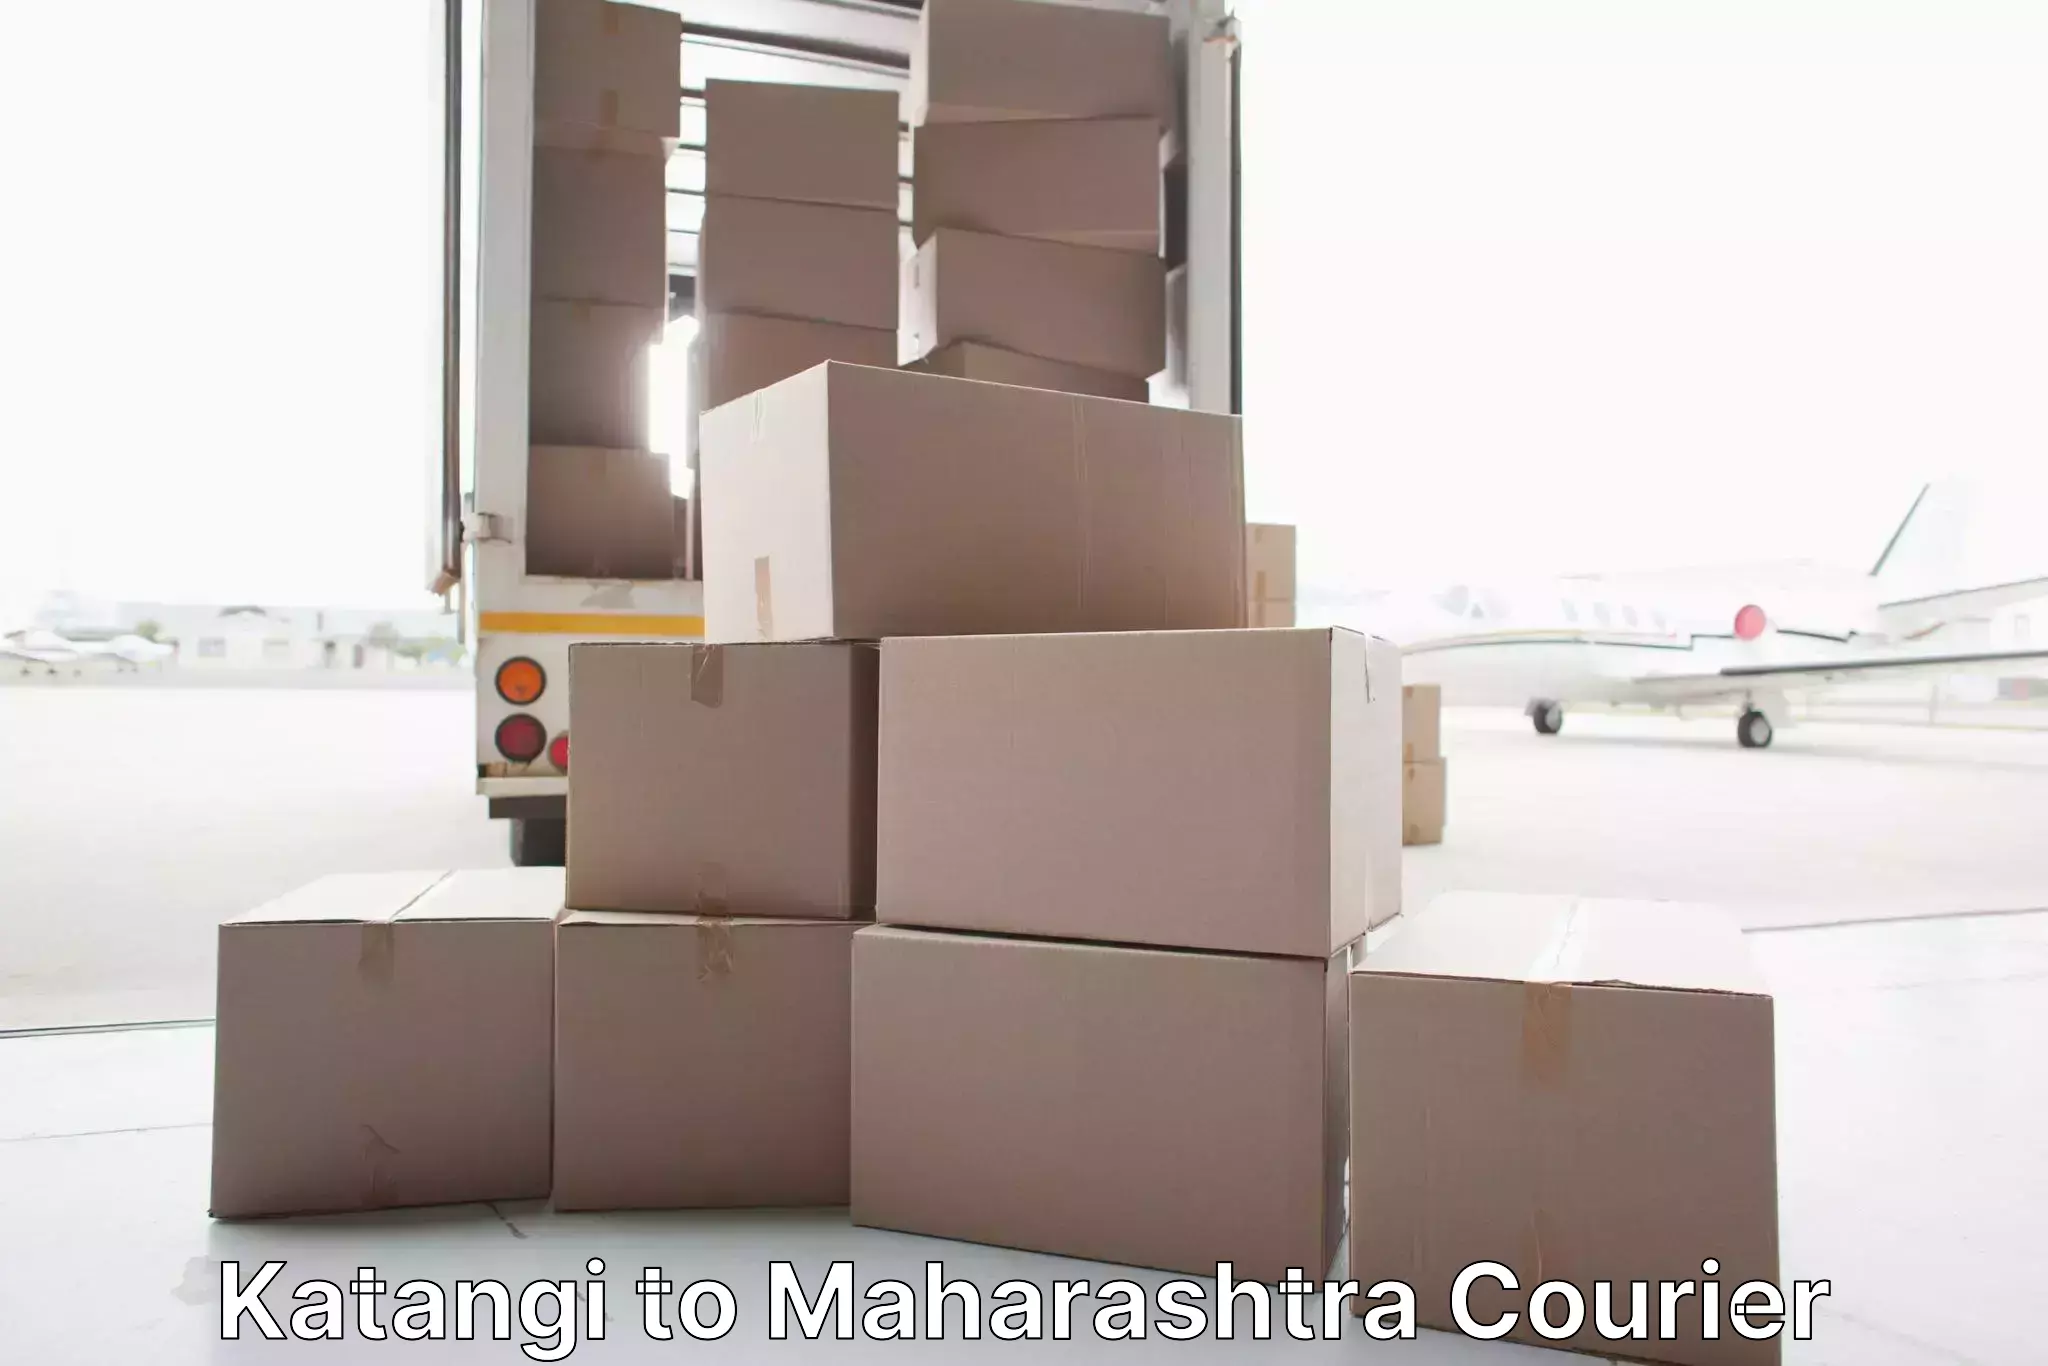 Full-service furniture transport Katangi to Maharashtra